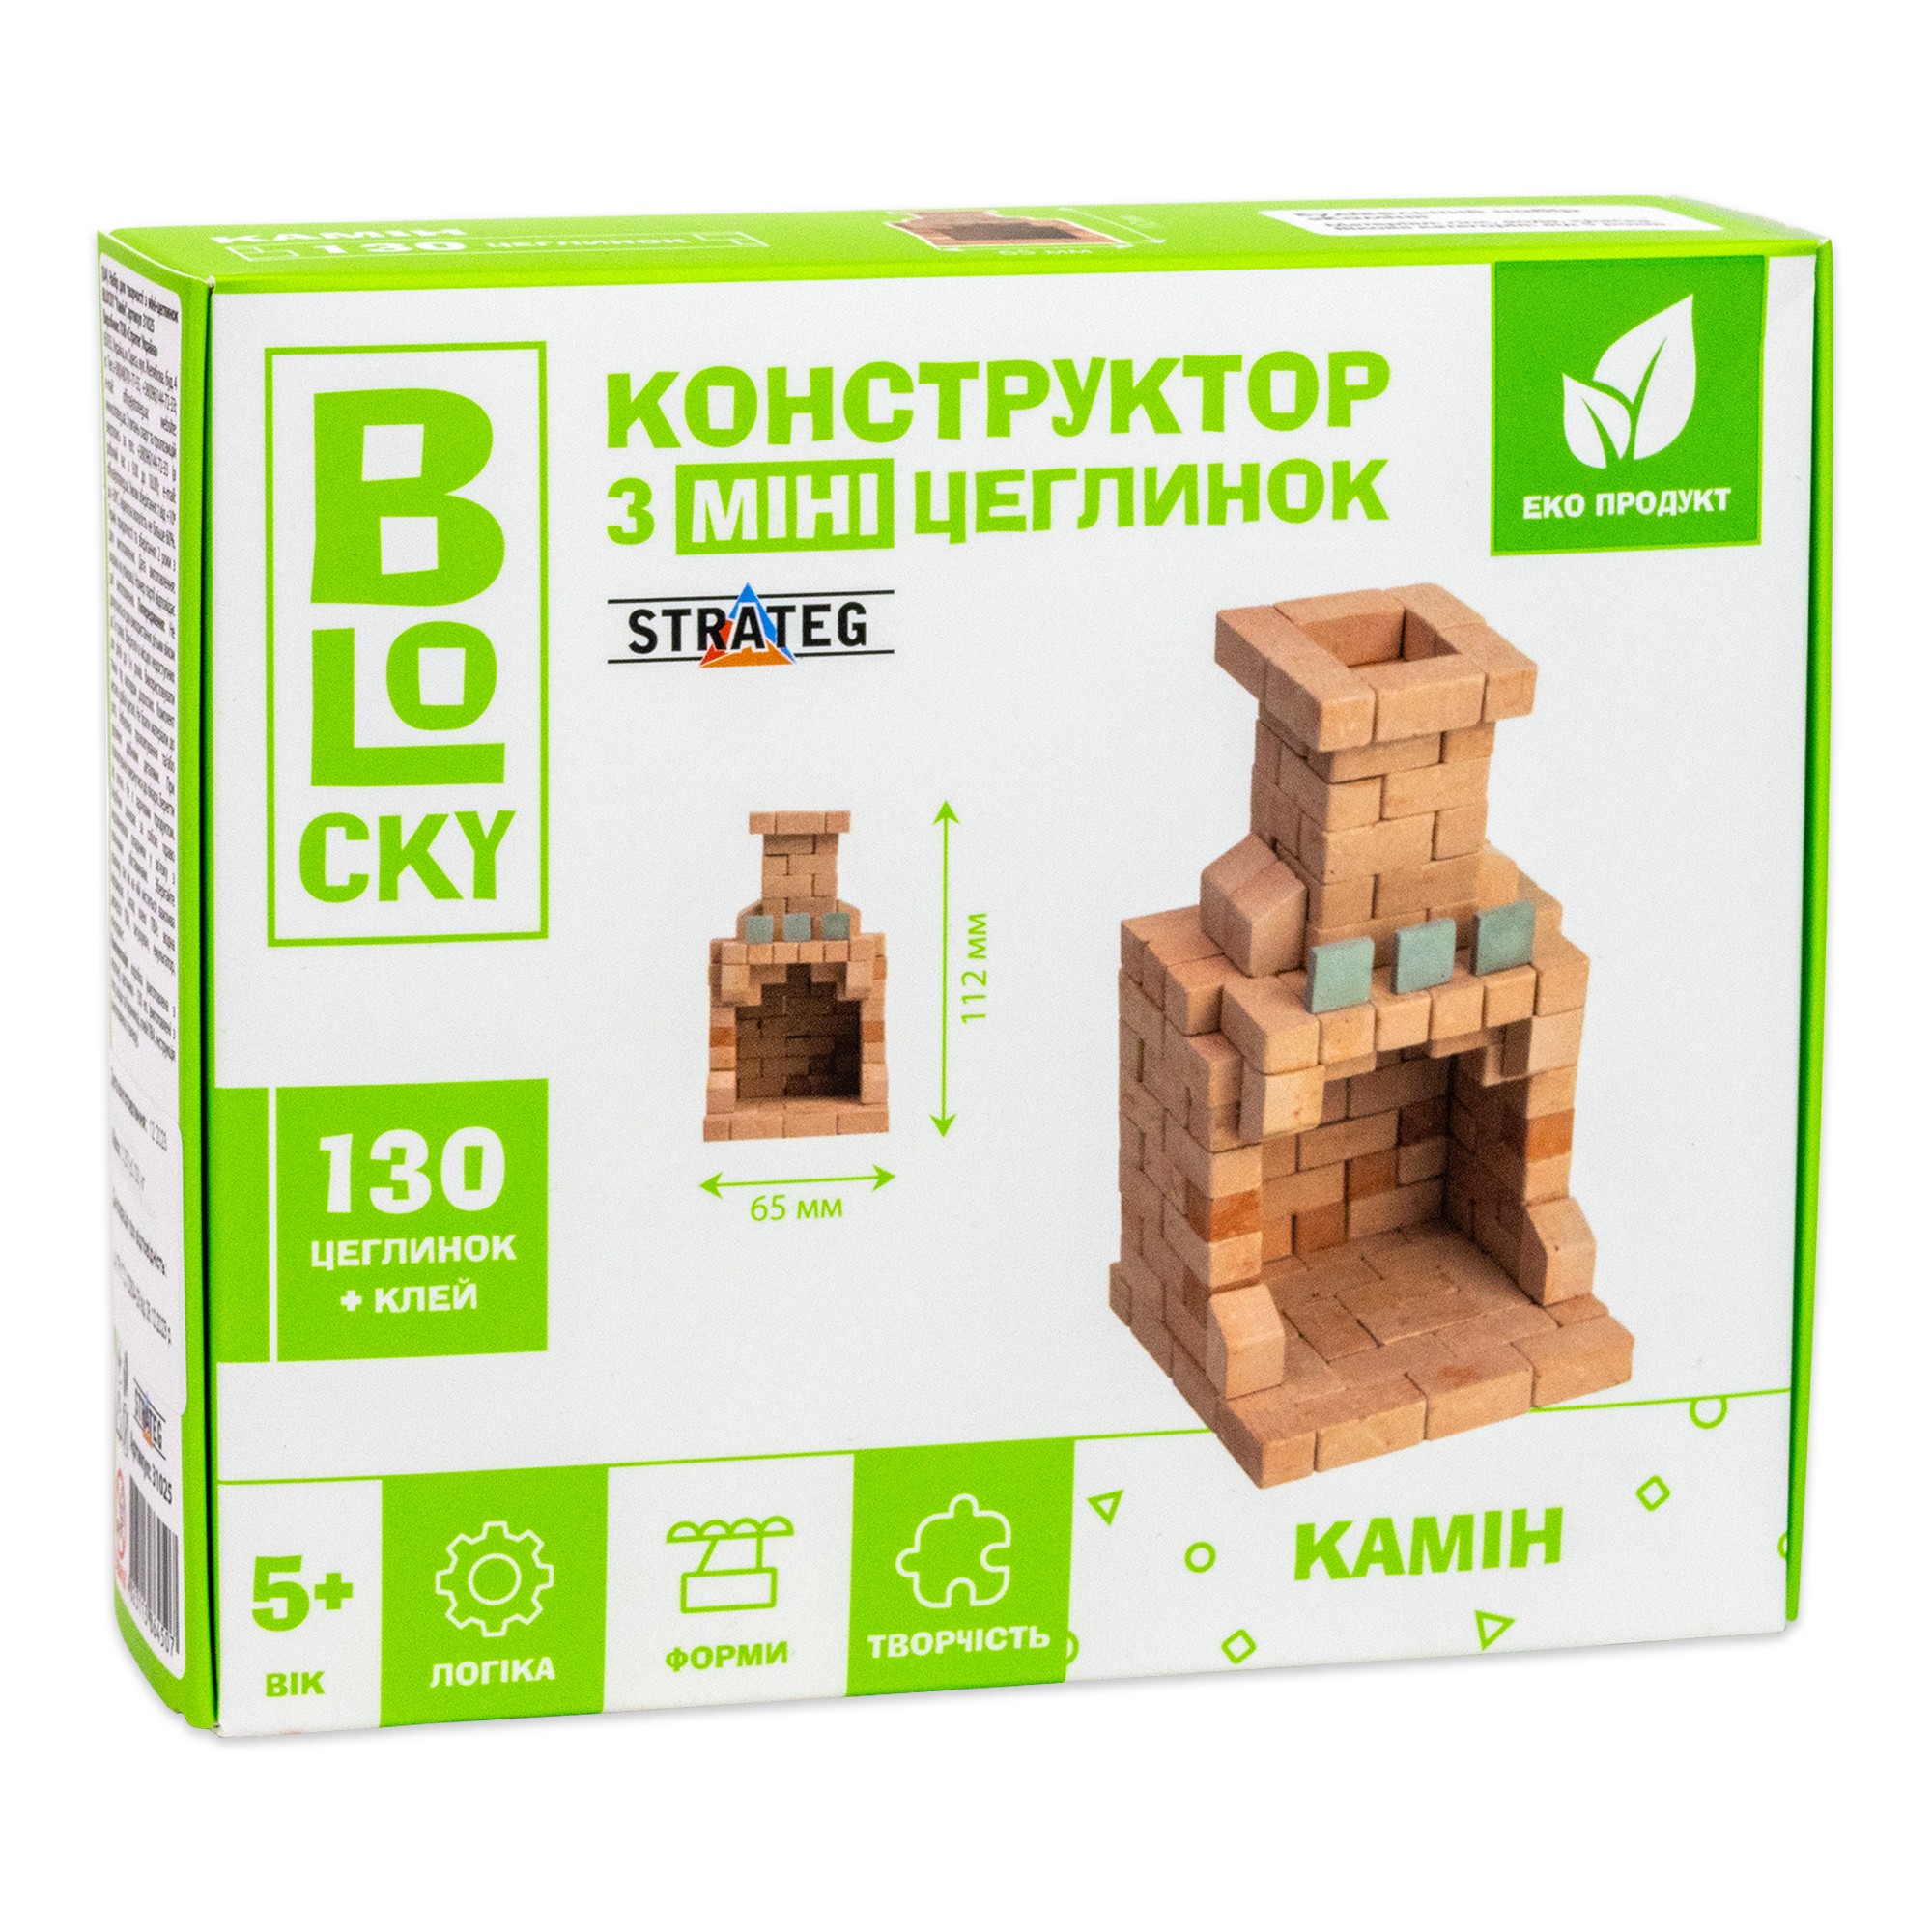 Будівельний набір для творчості "Камін" (з міні-цеглинок), бренду Strateg - KUBIX